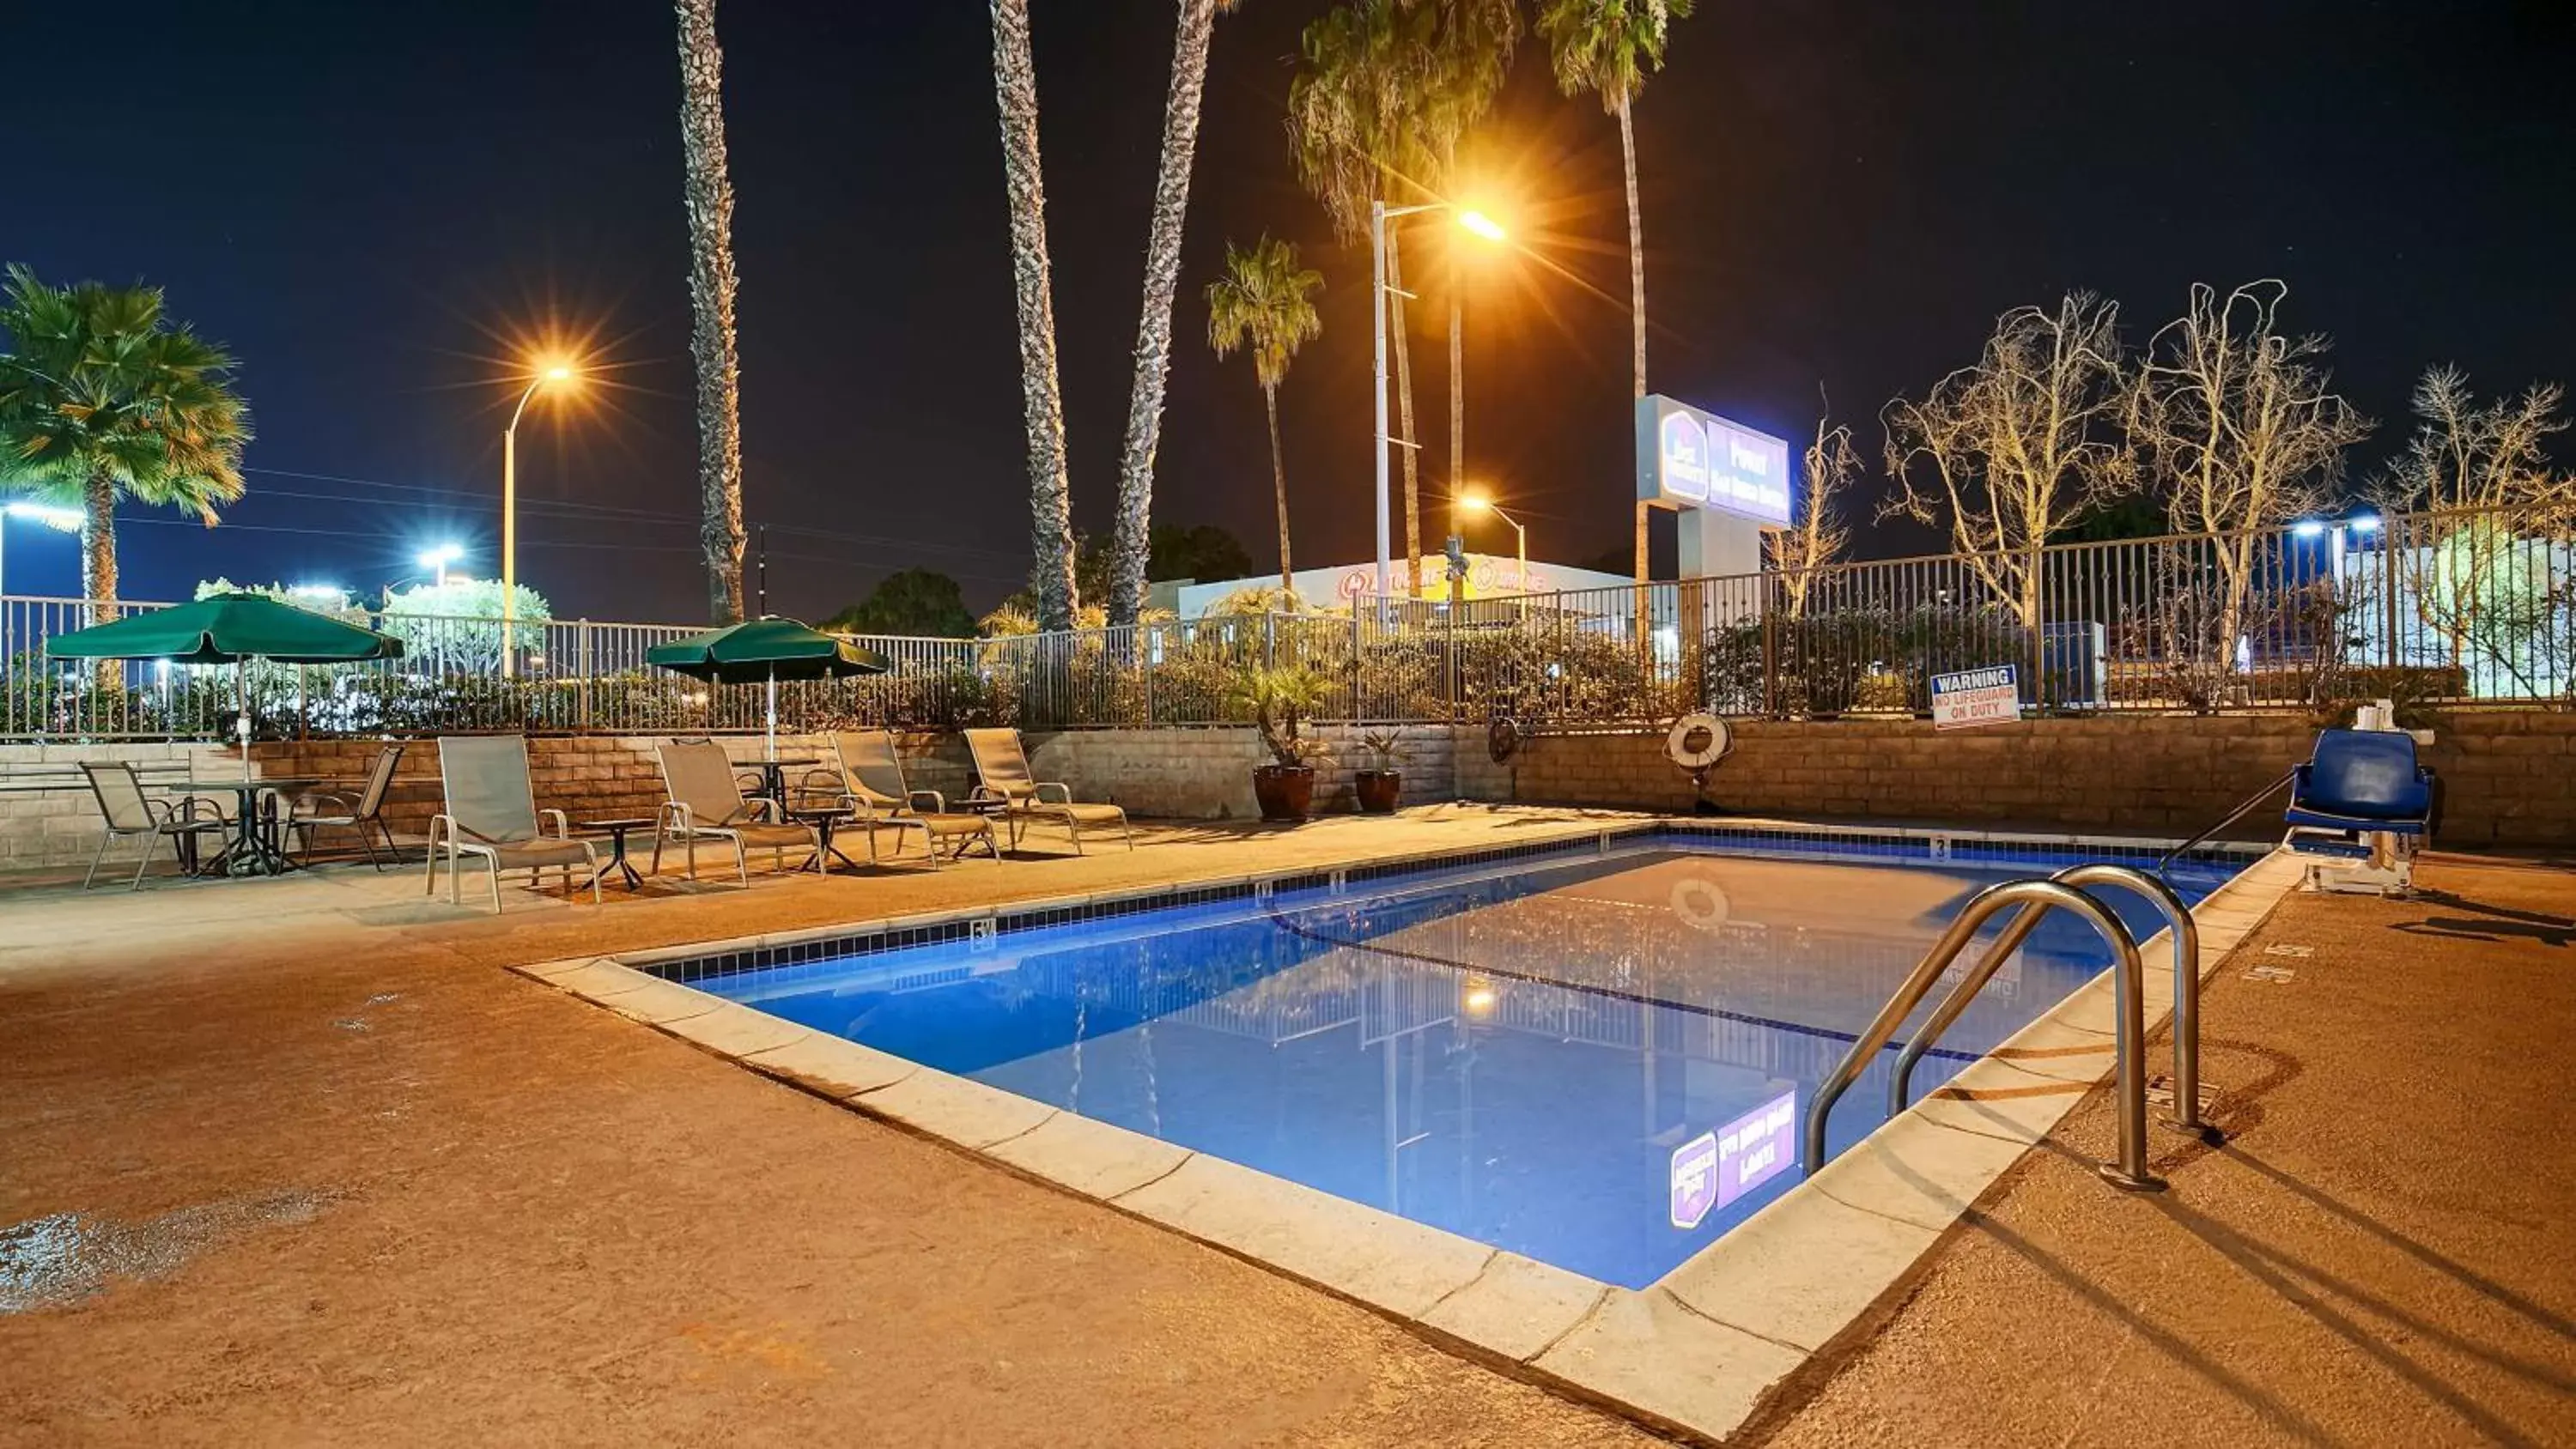 On site, Swimming Pool in Best Western Poway/San Diego Hotel